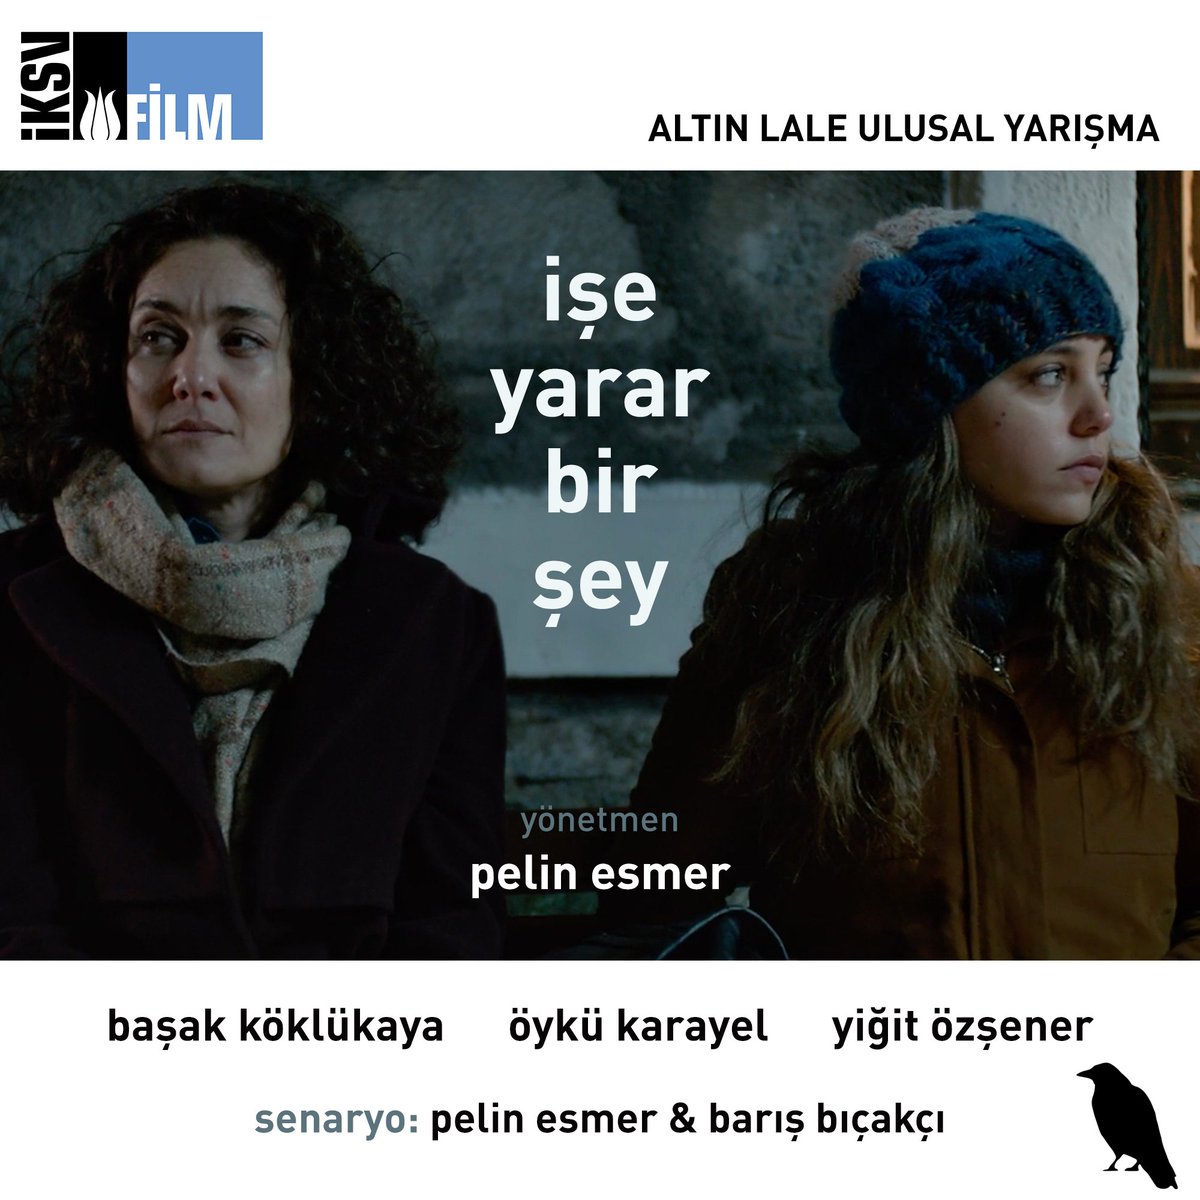 #İşeYararBirŞey yarın Türkiye'de ilk kez 36. @ist_filmfest Altın Lale Ulusal Yarışma kapsamında seyirciyle buluşuyor! #kaldirkafani